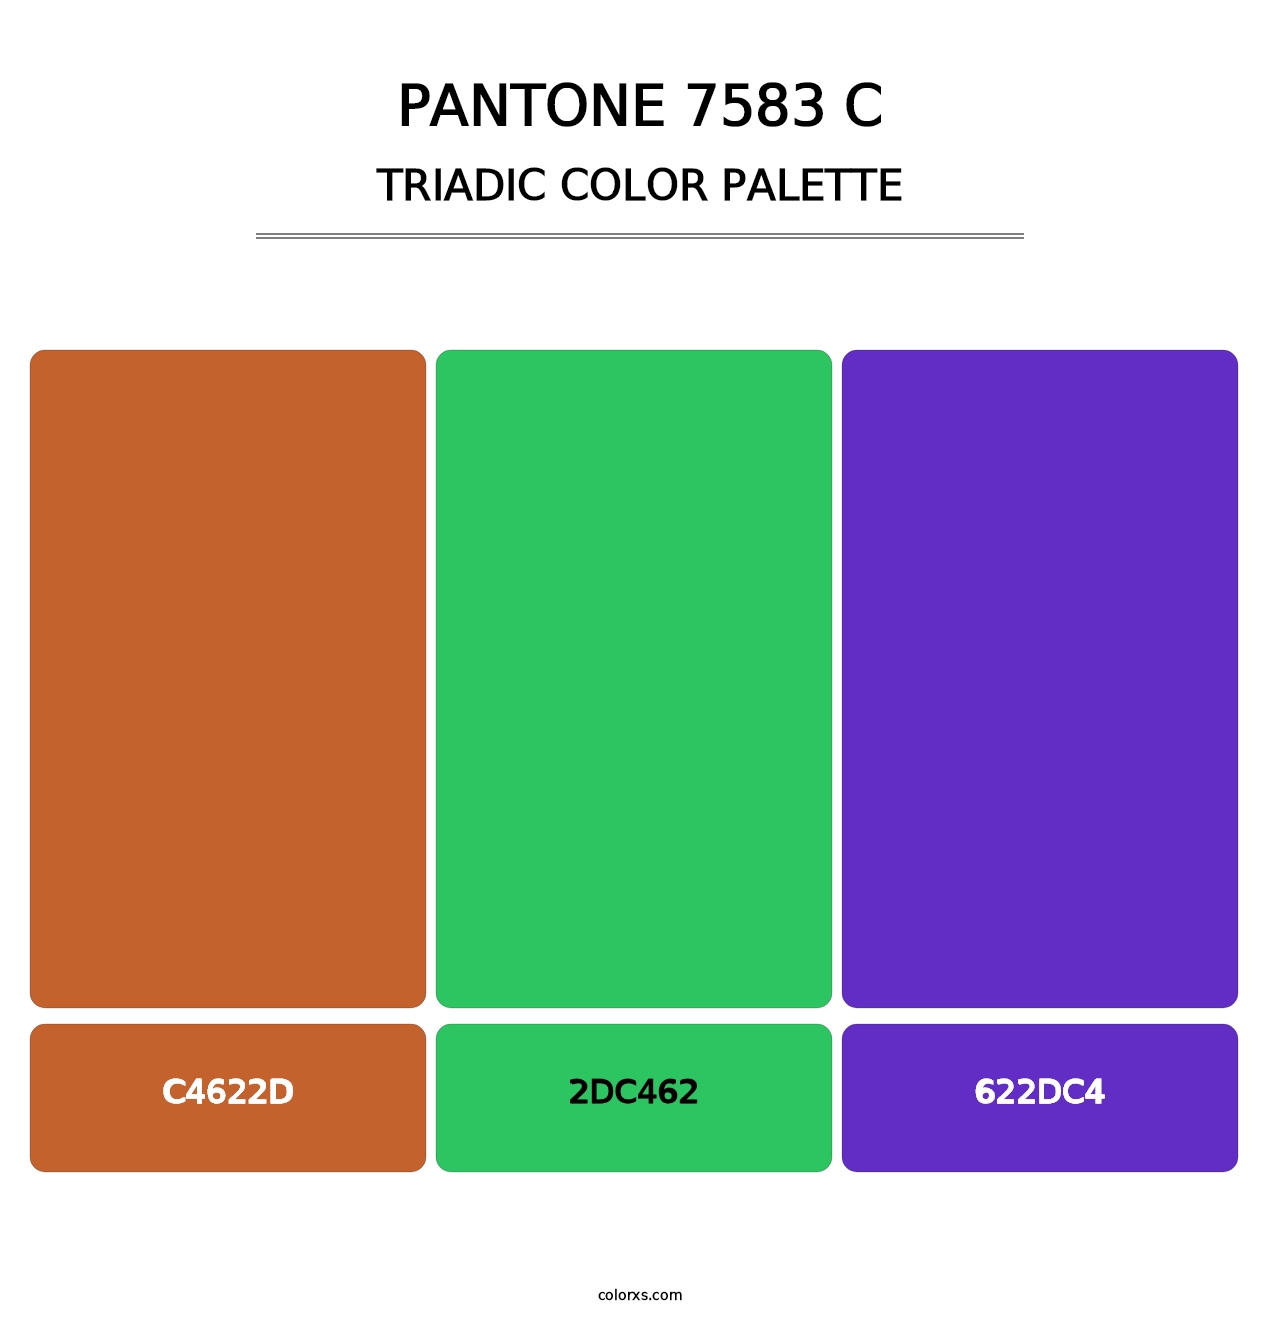 PANTONE 7583 C - Triadic Color Palette